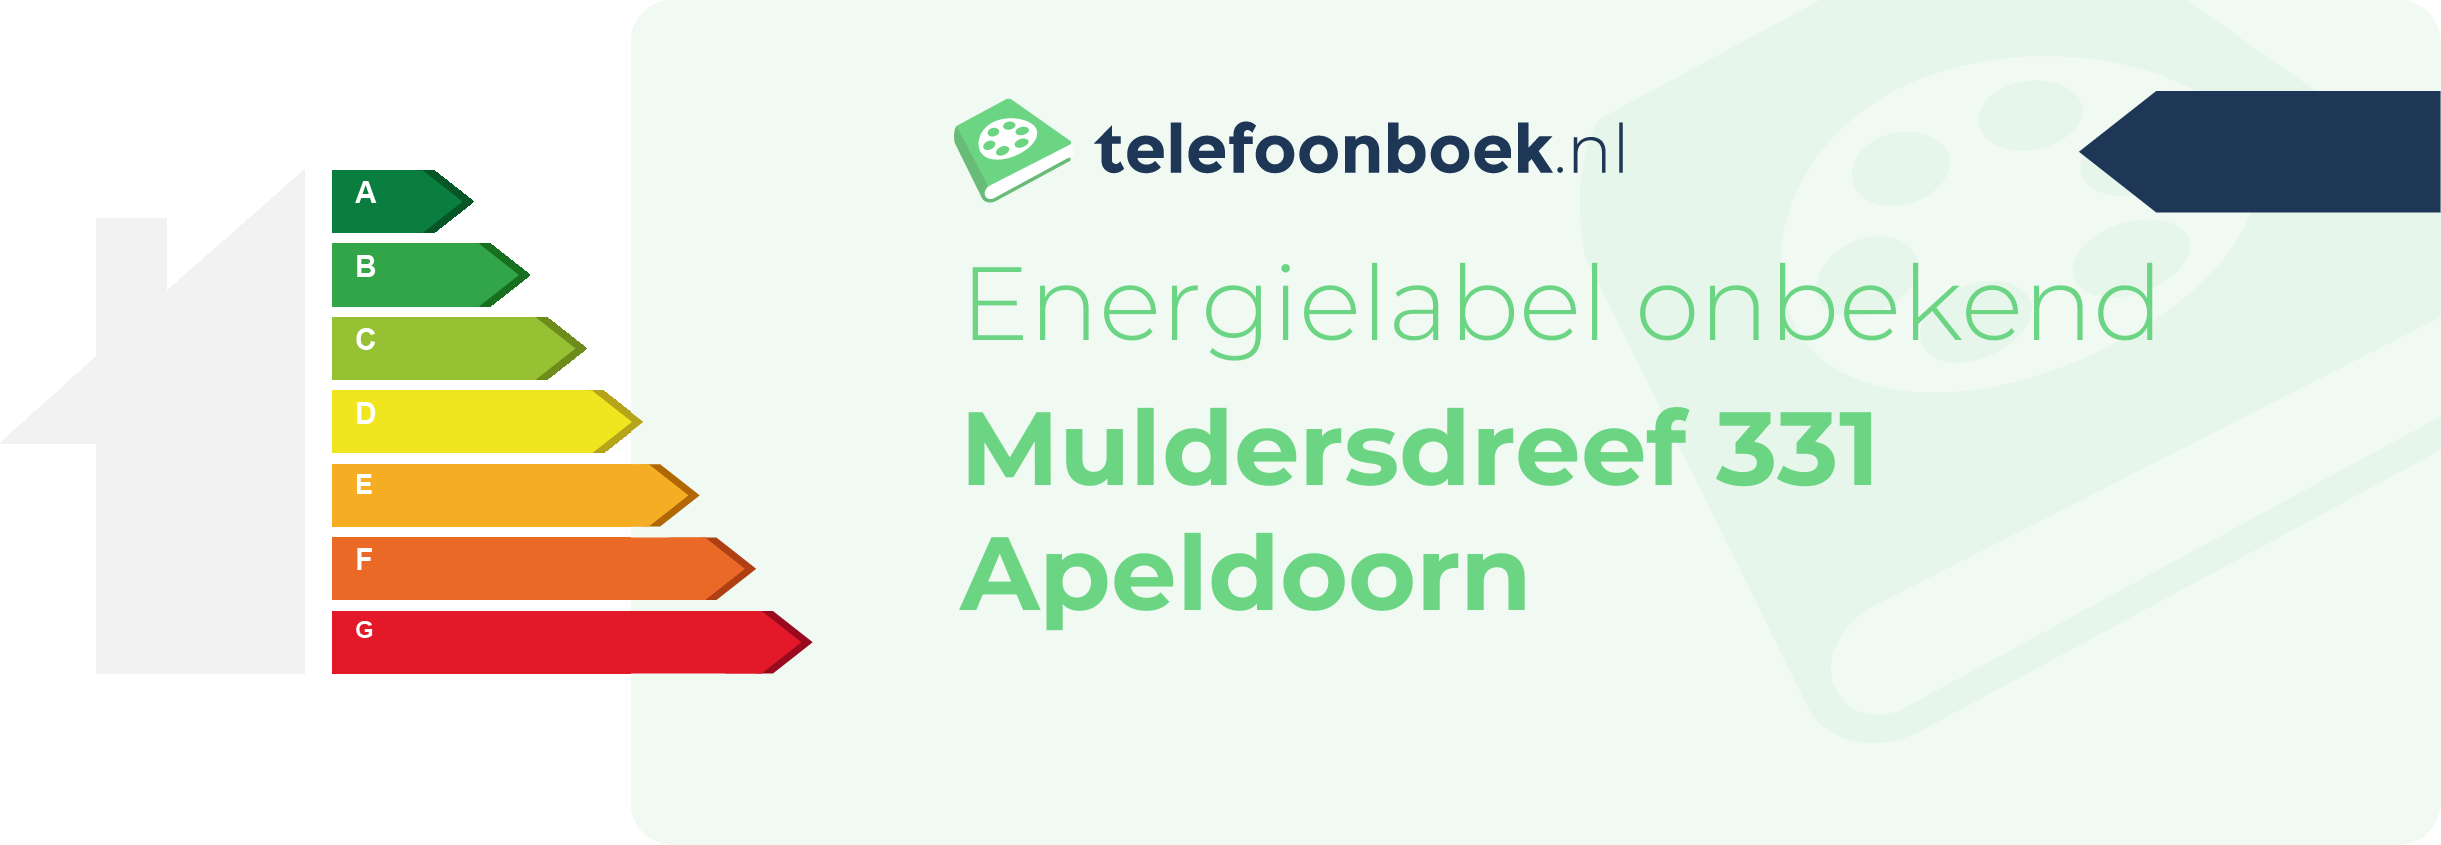 Energielabel Muldersdreef 331 Apeldoorn